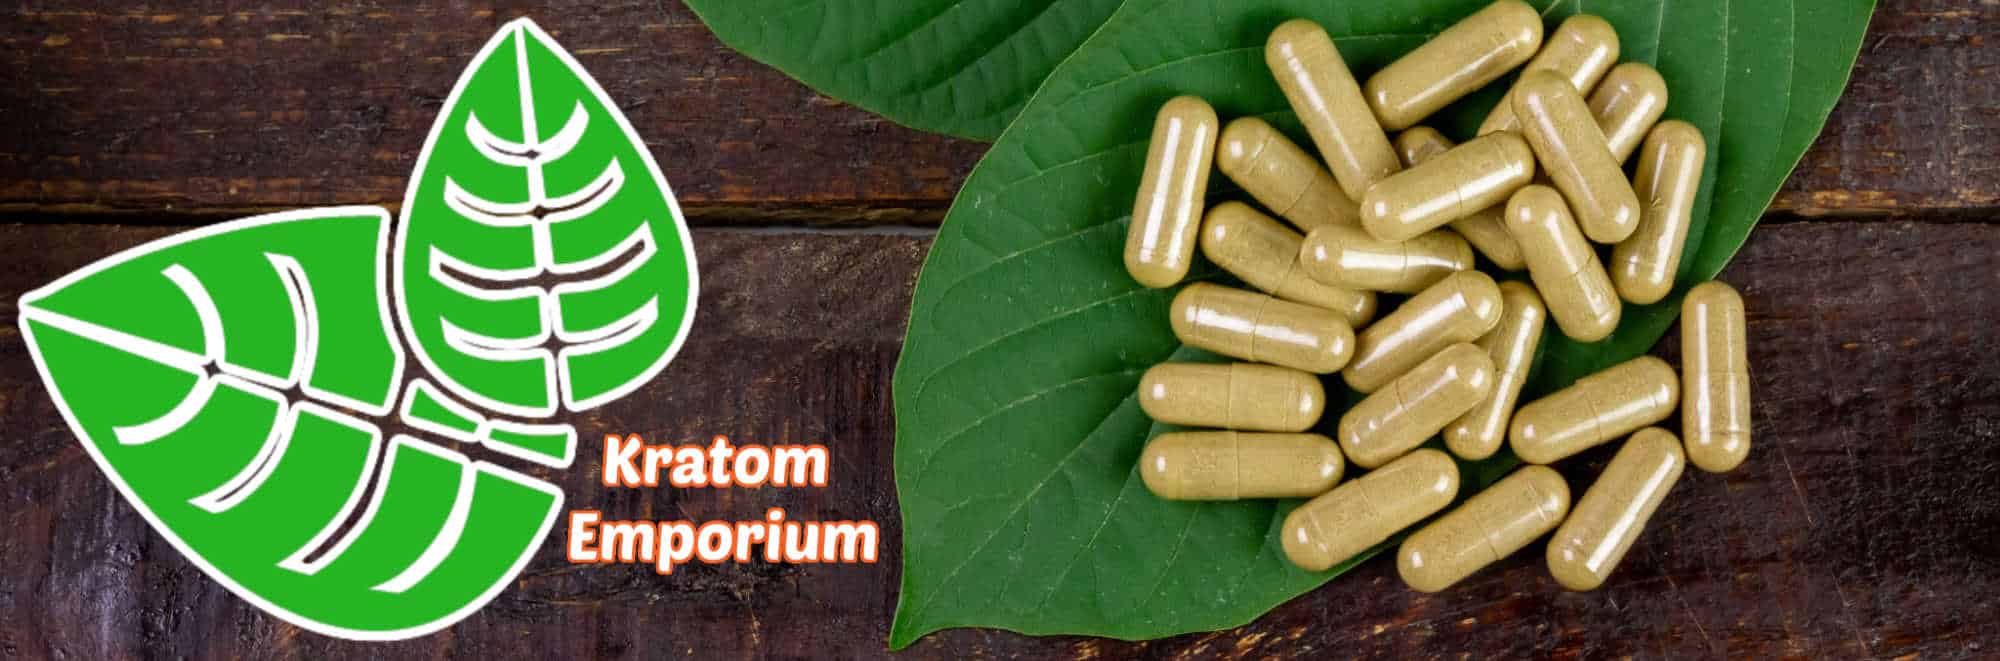 image of kratom emporium products